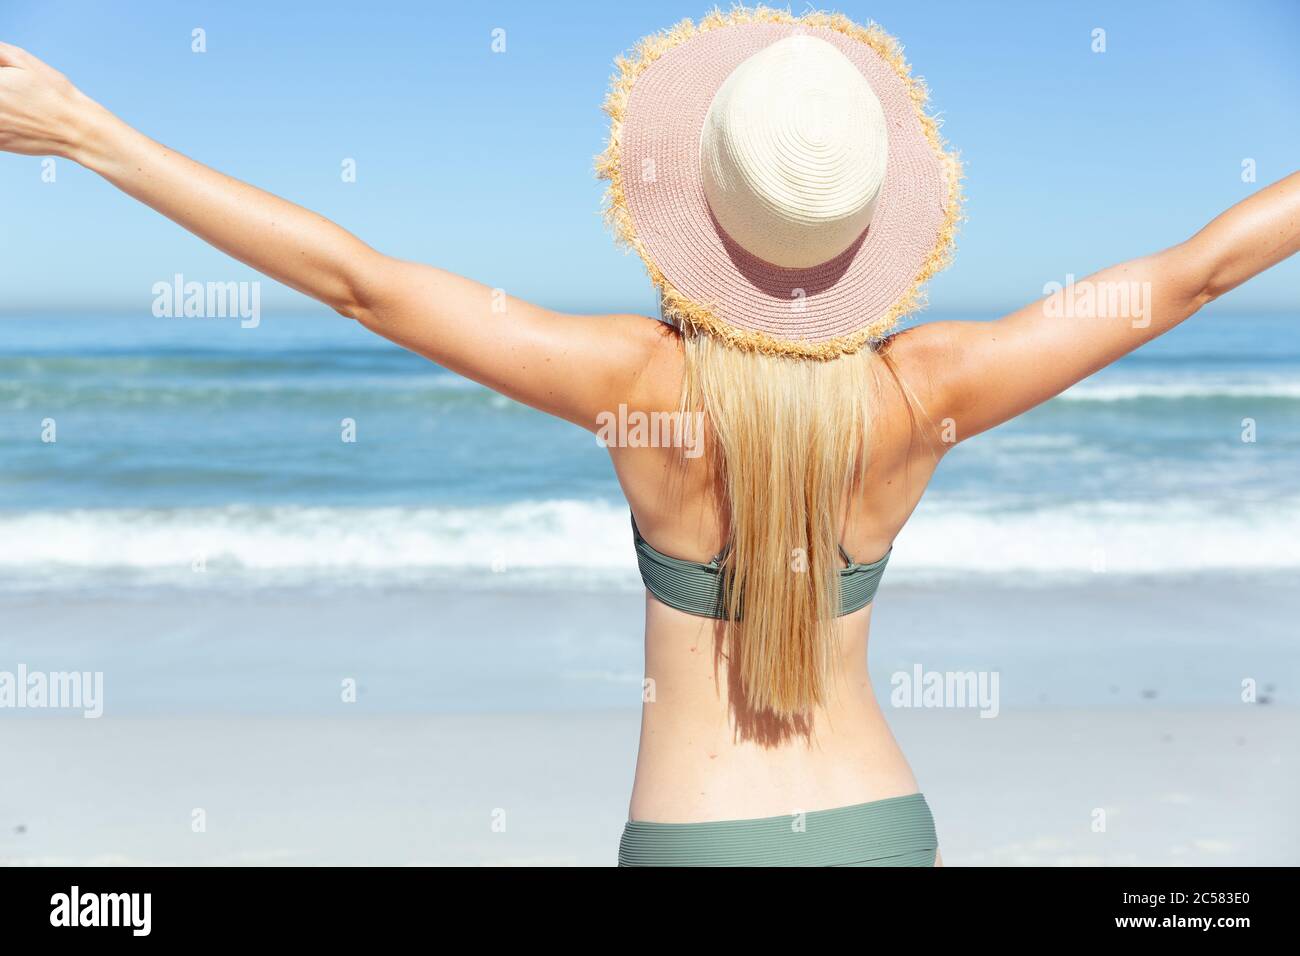 Vue arrière de la femme debout avec ses bras ouverts sur la plage Banque D'Images